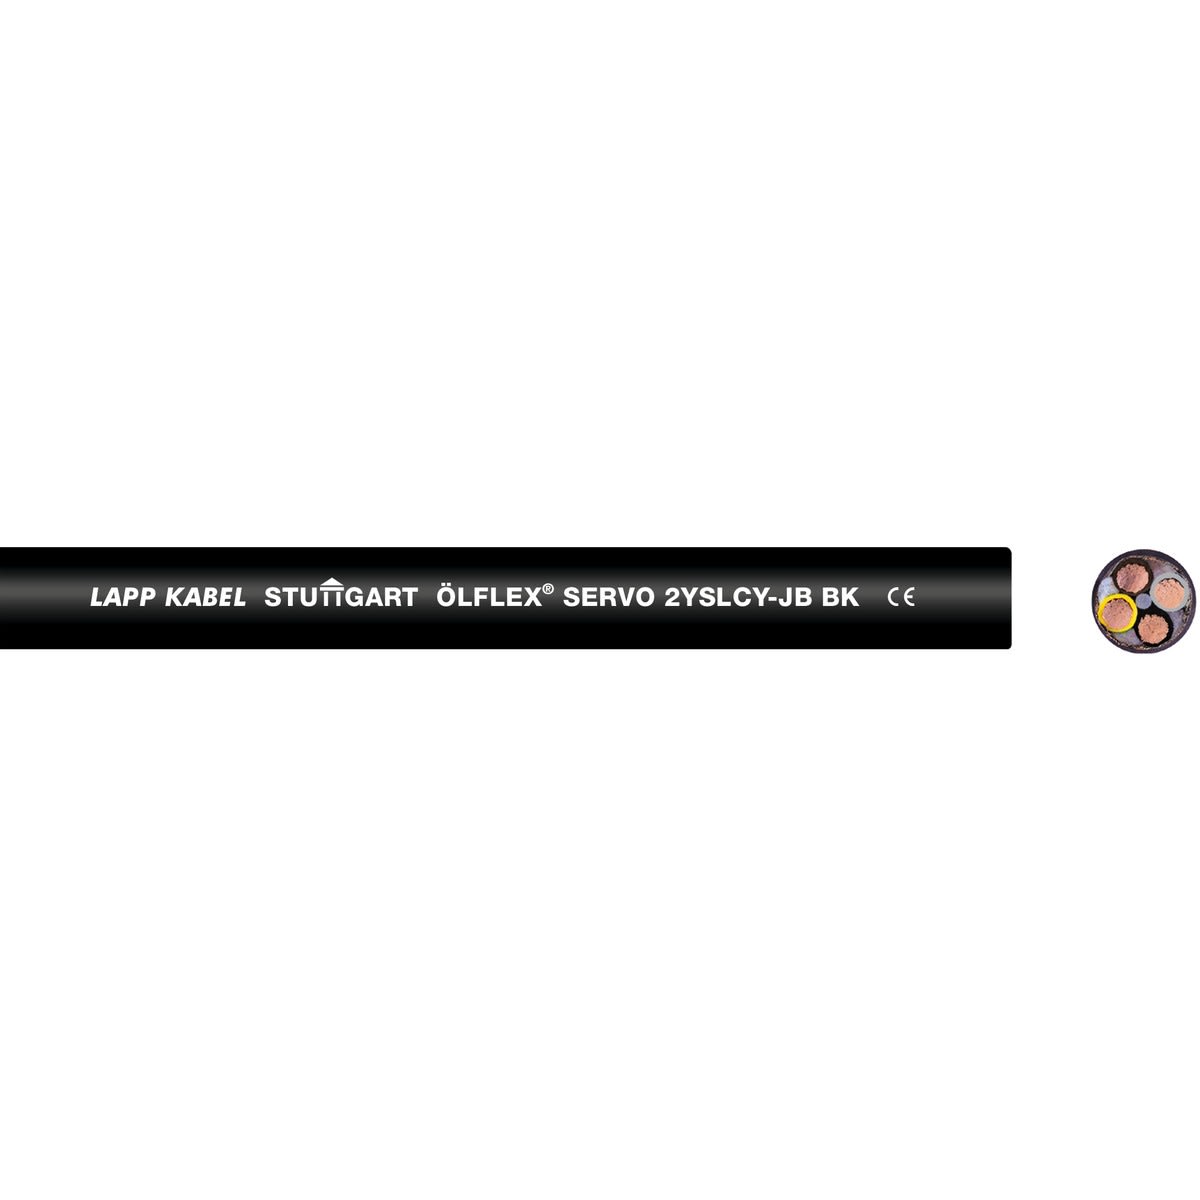 Lapp - ÖLFLEX SERVO 2YSLCY-JB BK 4G25